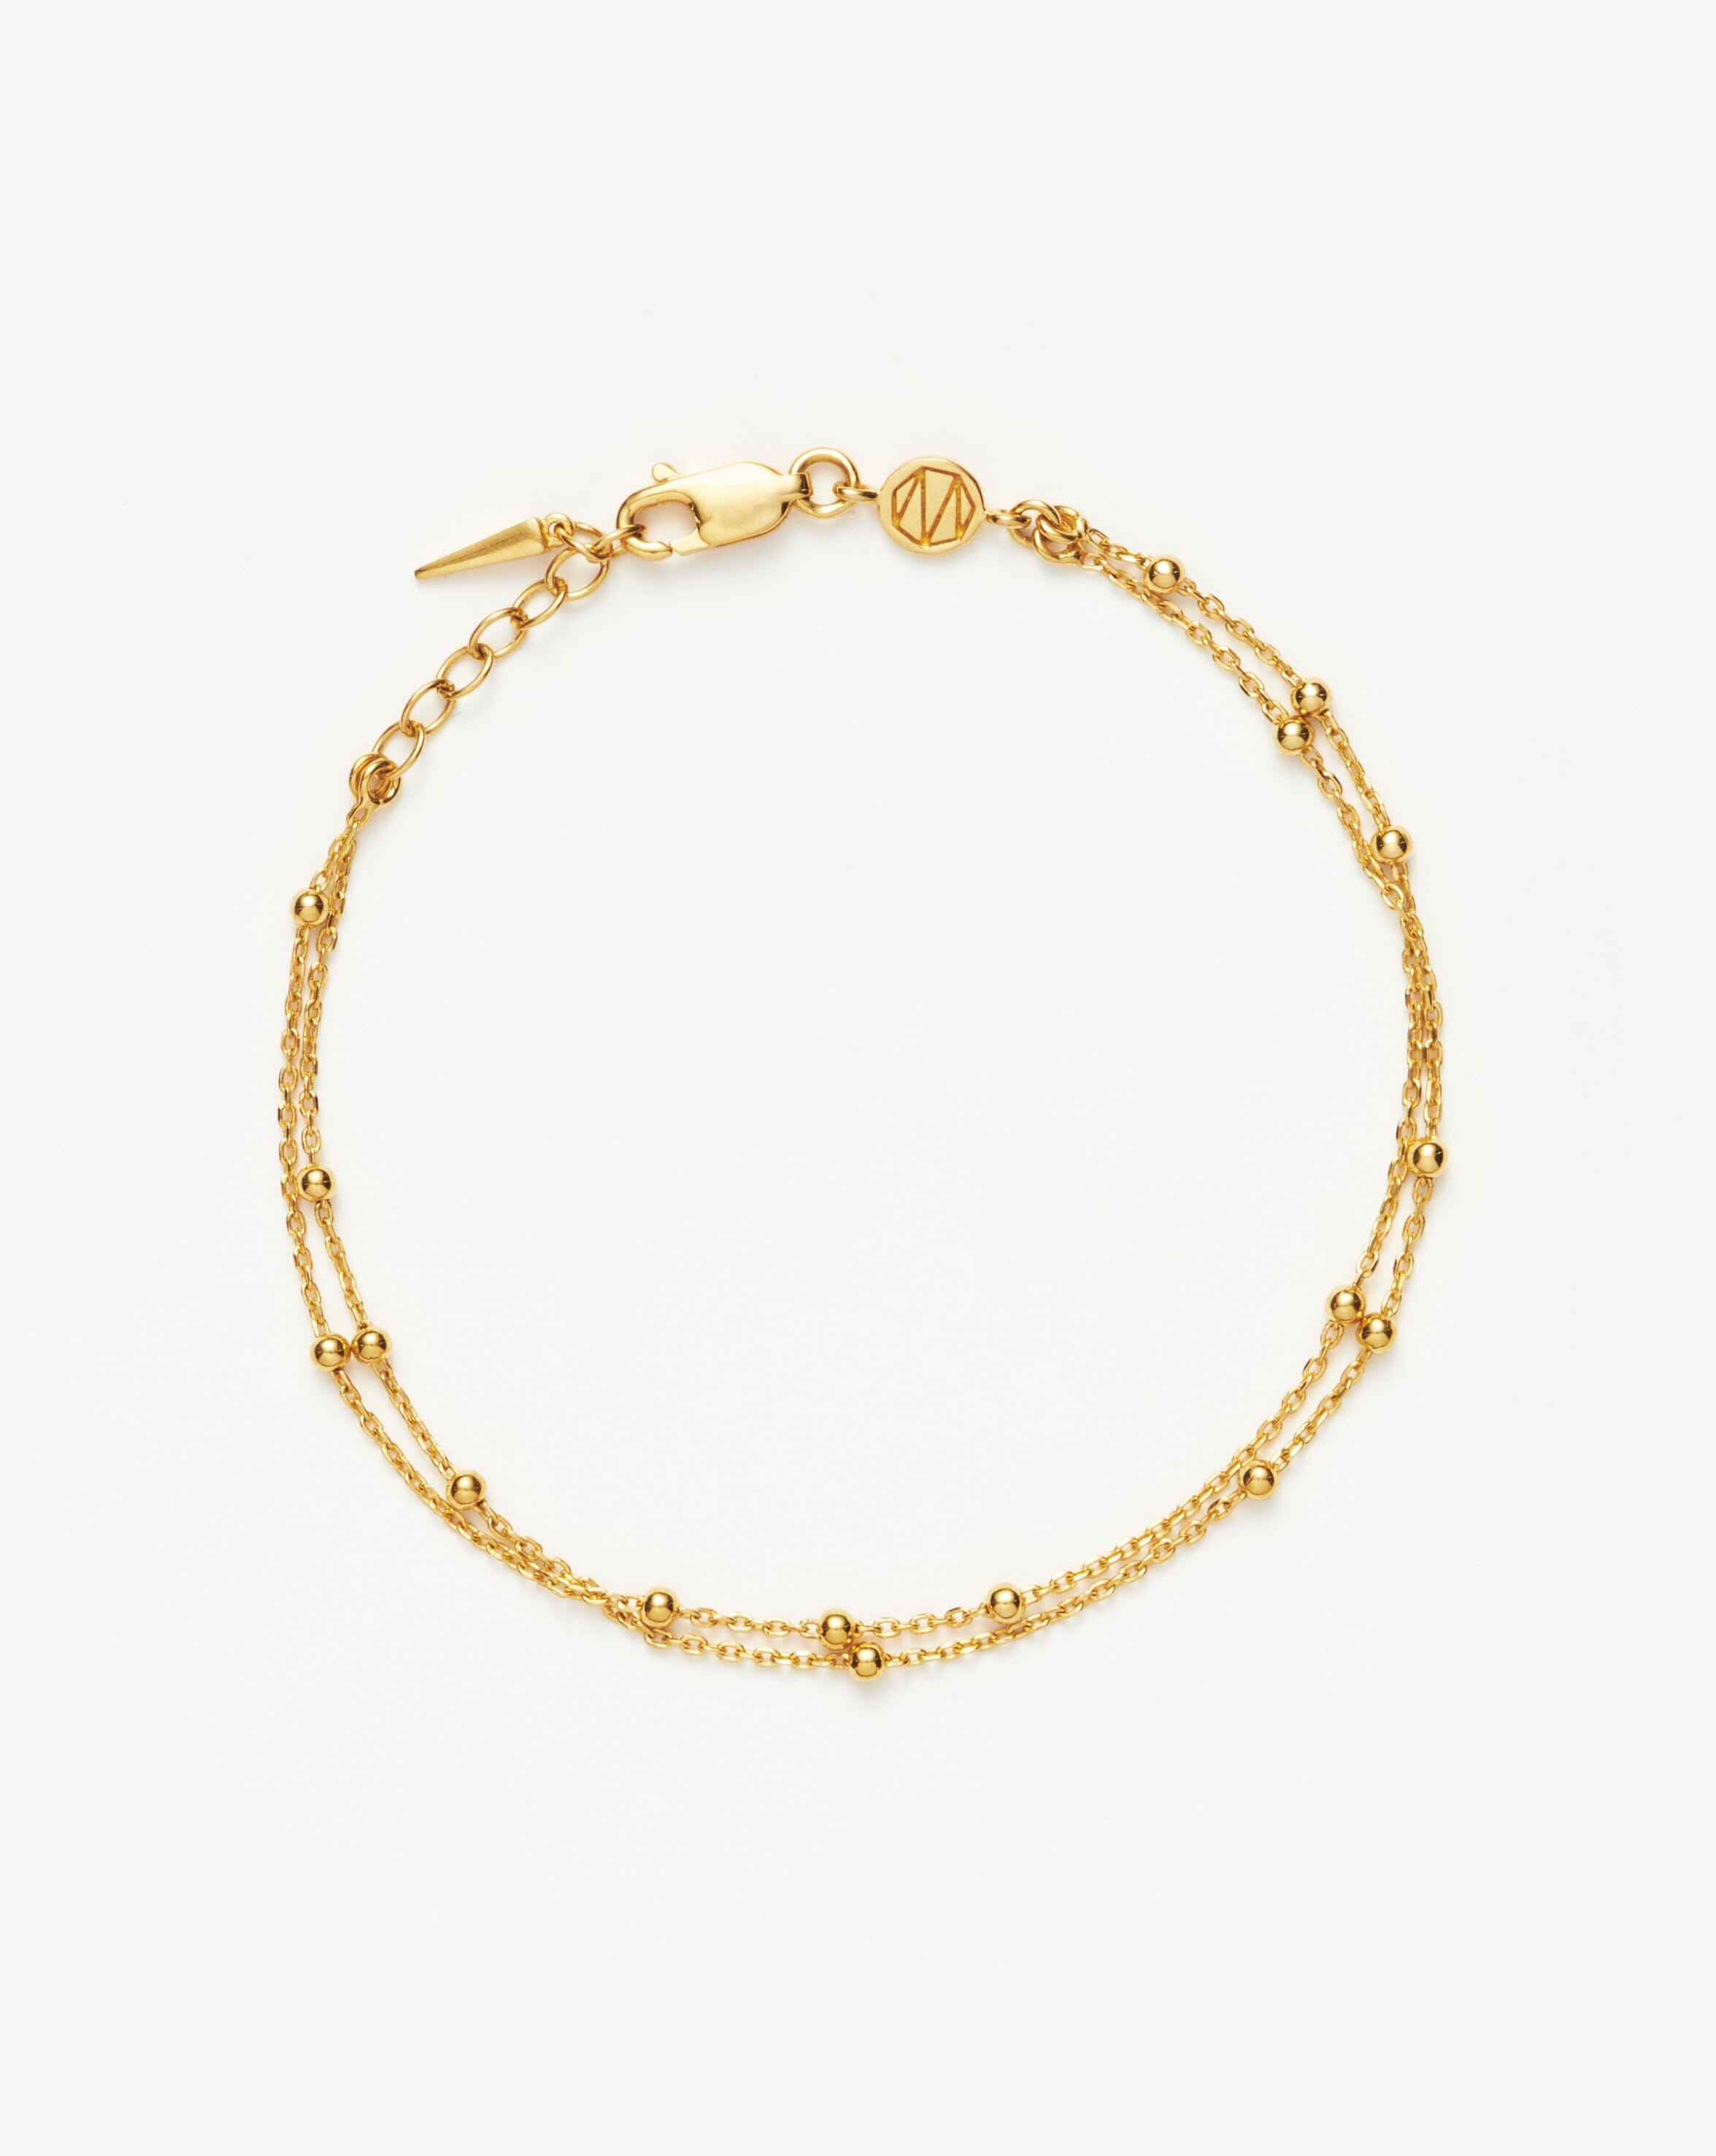 Dew Drop Bracelet Dainty Gold Charm Bracelet Delicate 